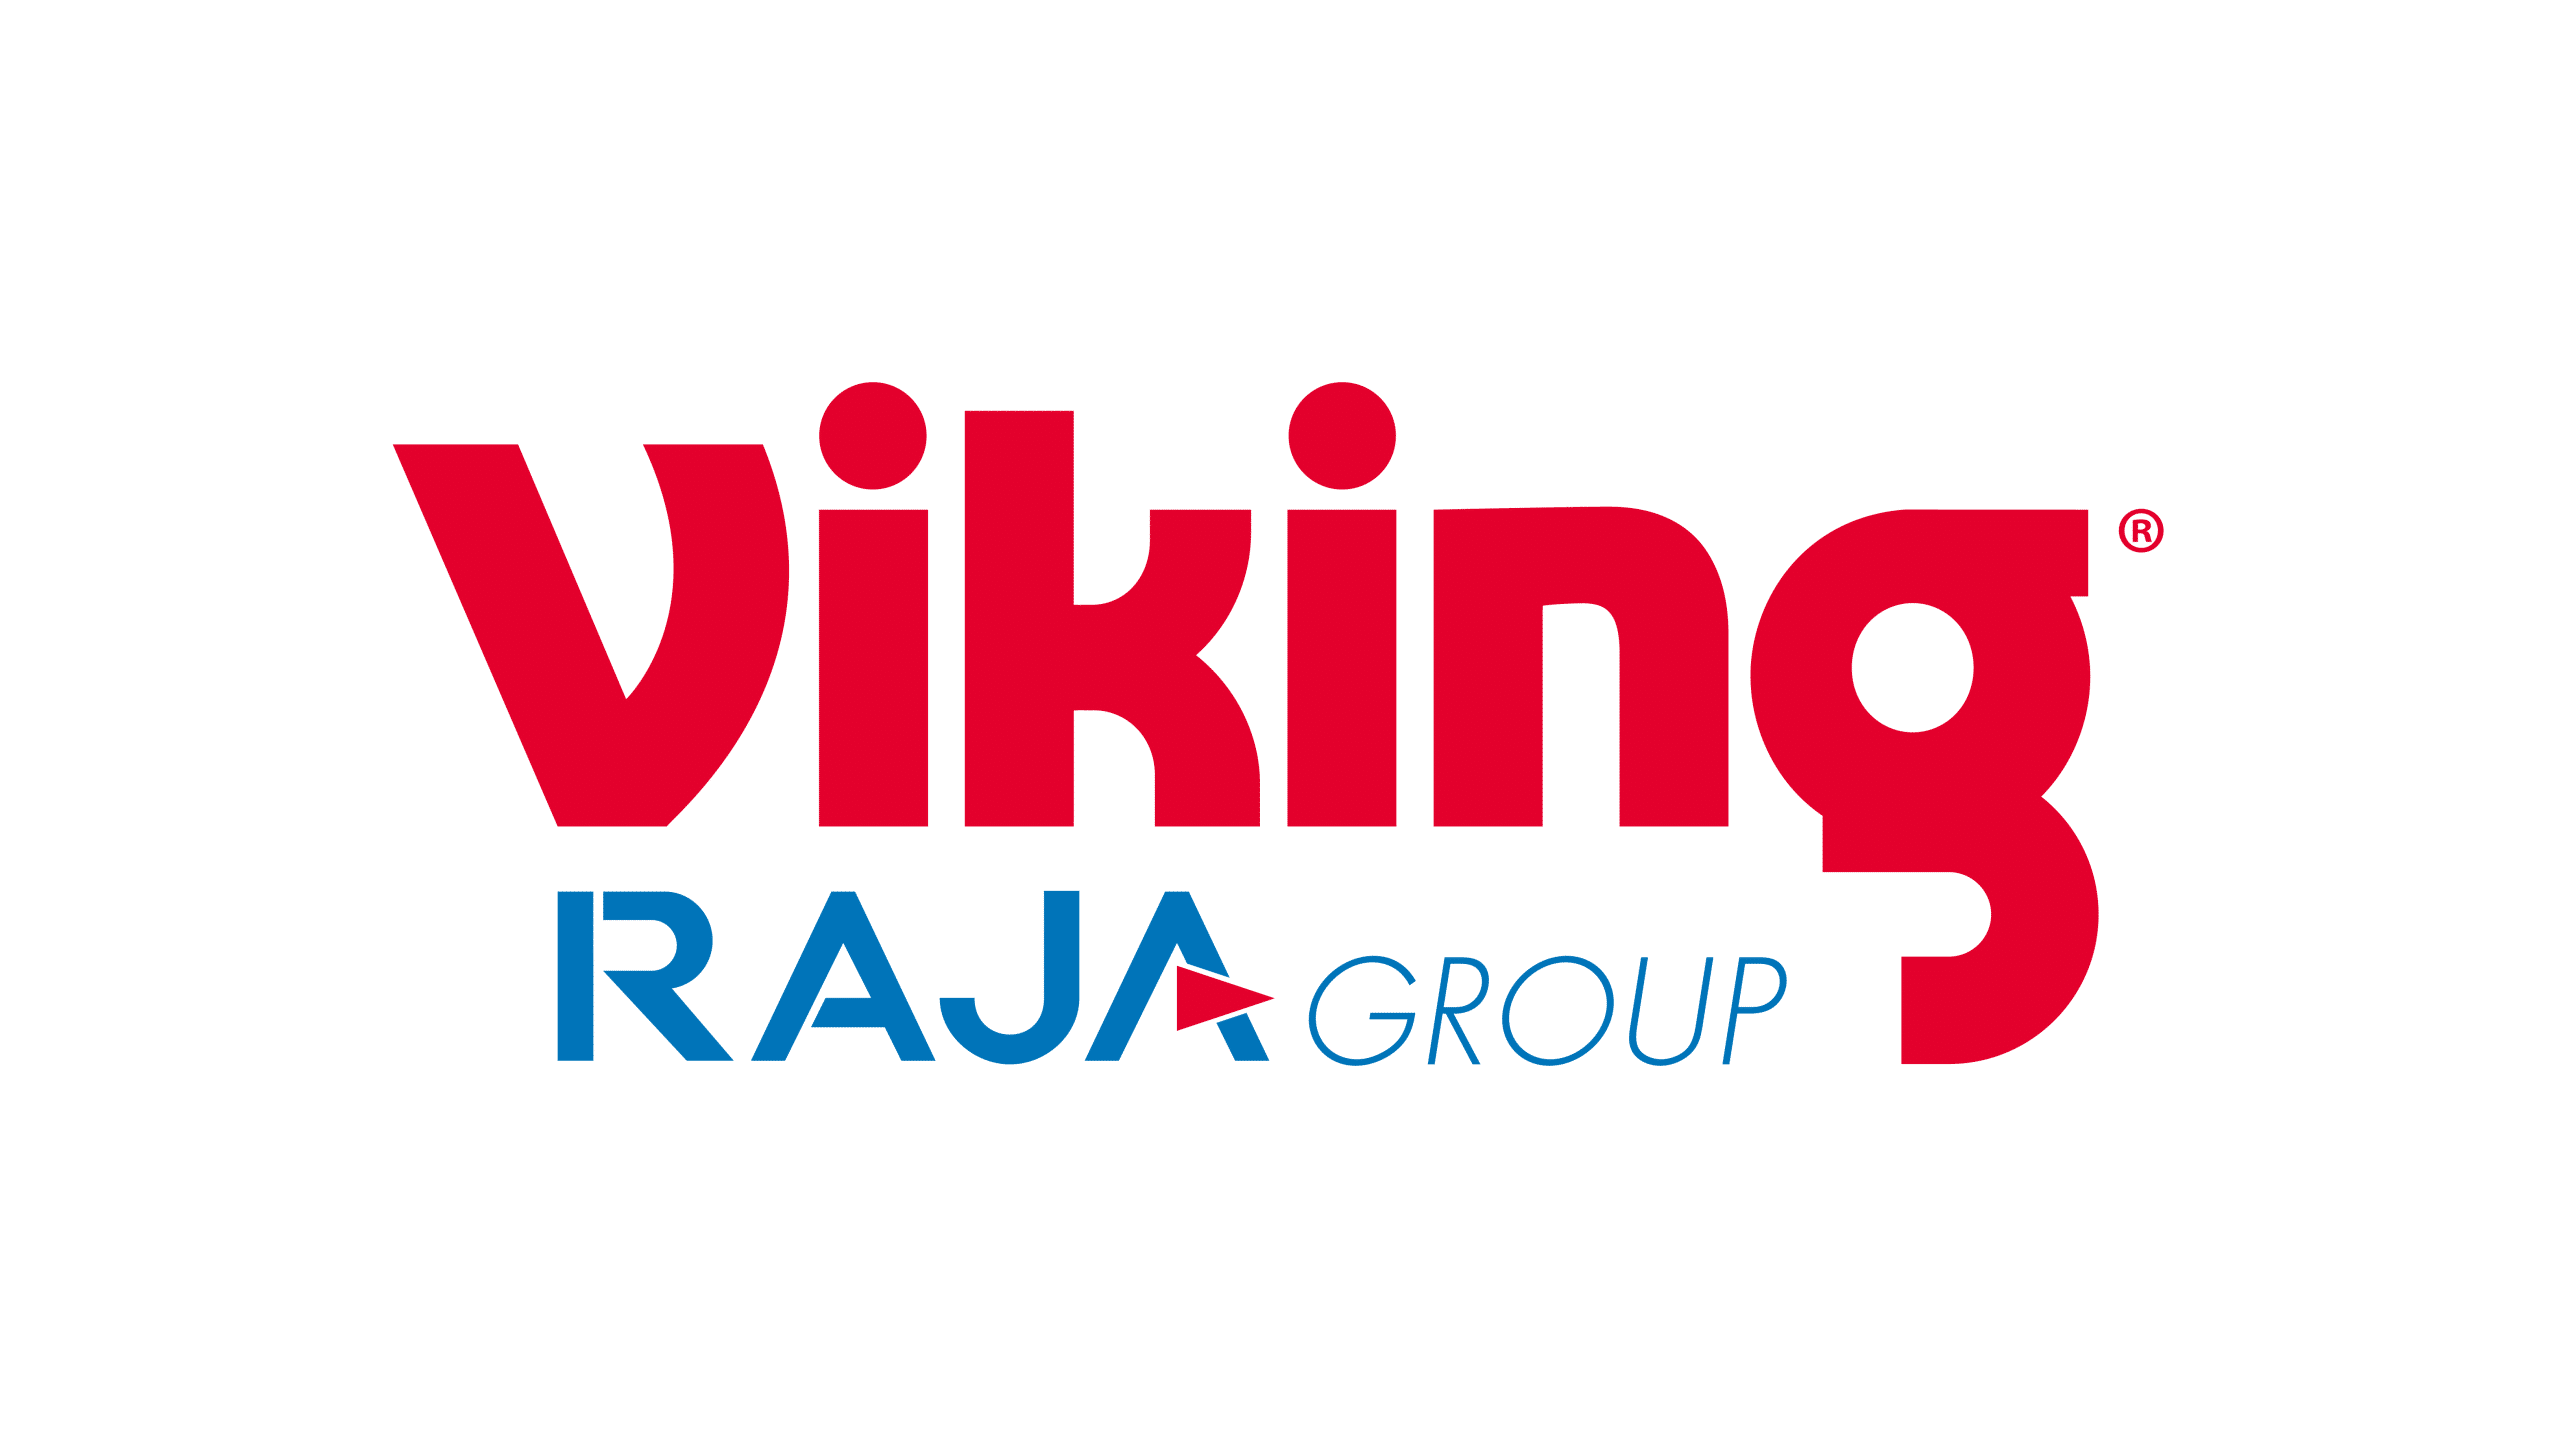 Office Depot Europe - Viking RAJA Group